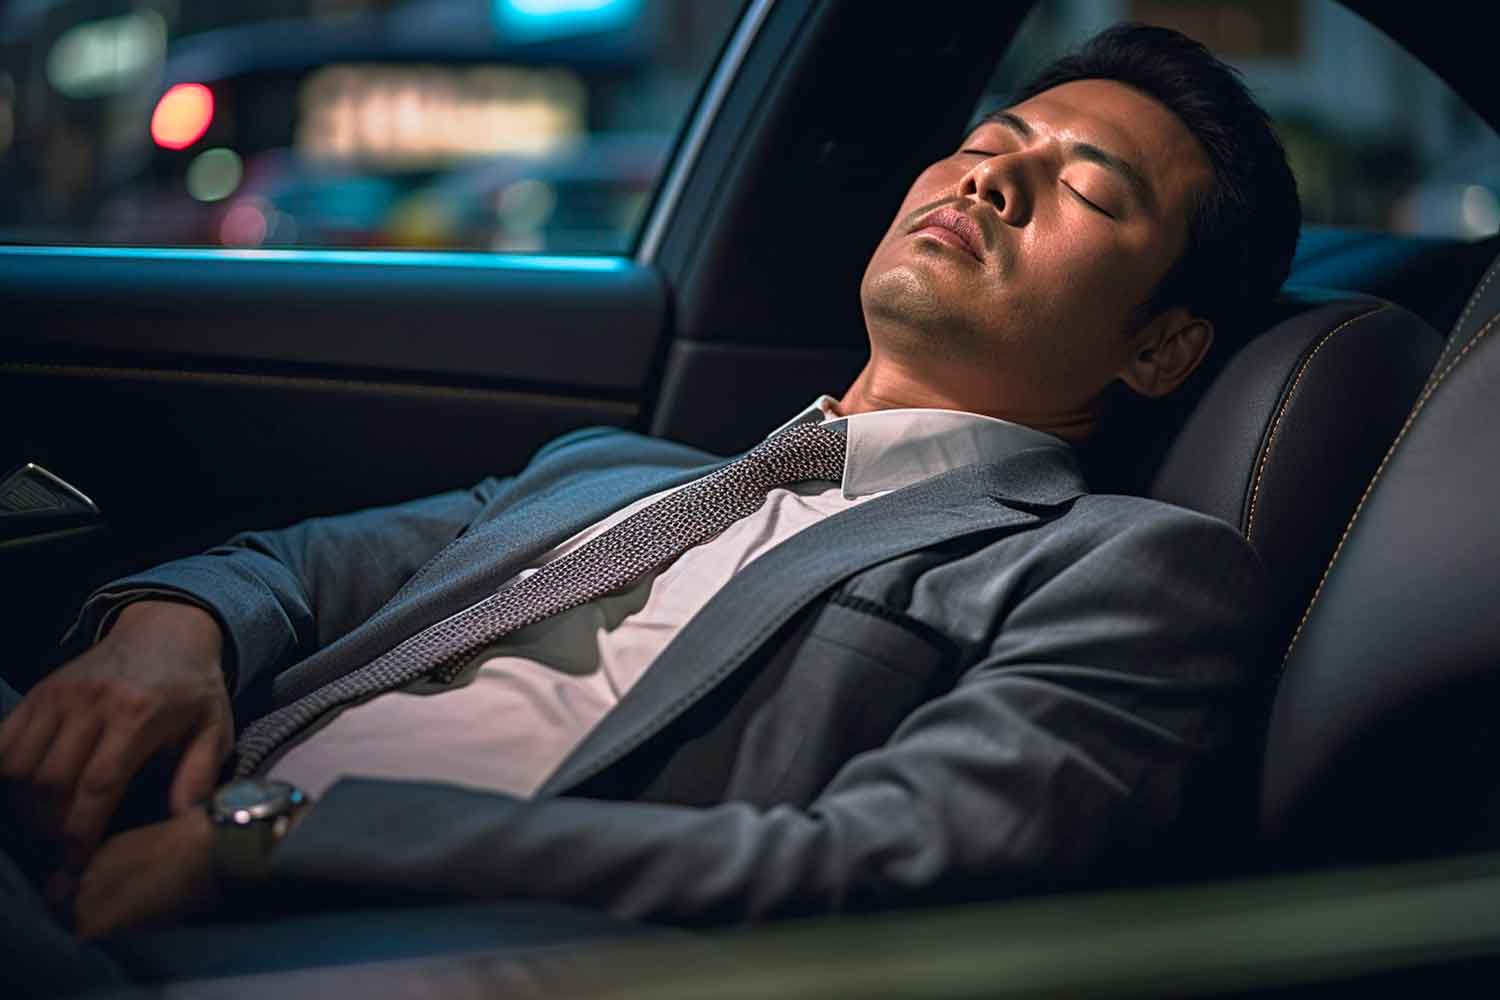 ドライブ中に眠くなるメカニズムと眠気を防ぐ方法とは